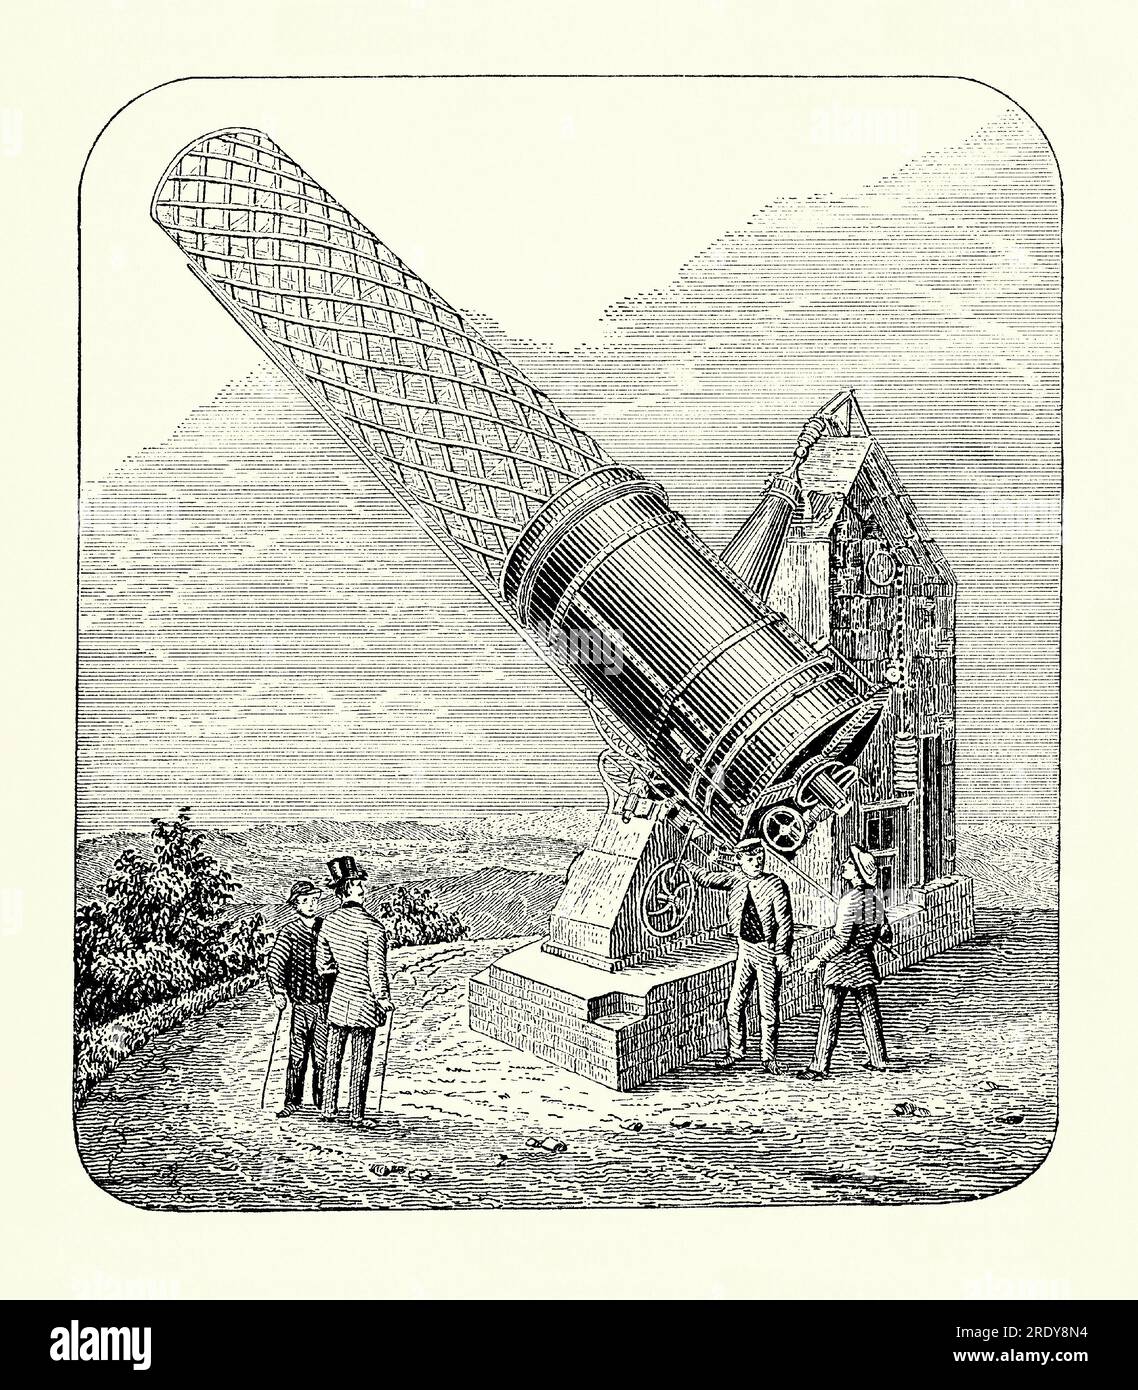 Une gravure ancienne du Grand télescope de Melbourne, Melbourne, Victoria, Australie vers 1869. Il est tiré d'un livre de génie mécanique des années 1880 Le Great Melbourne Telescope a été construit par la Grubb Telescope Company à Dublin en Irlande en 1868. Il a été installé à l'Observatoire de Melbourne en 1869. Avec un miroir primaire de 48 pouces (1,2 mètres) de diamètre, c'était l'un des plus grands télescopes de la fin du 19e siècle. En 1945, l'Observatoire a fermé et le télescope a été déplacé à l'Observatoire du Mont Stromlo près de Canberra. En 2003, le télescope a été gravement endommagé dans un feu de brousse. Banque D'Images